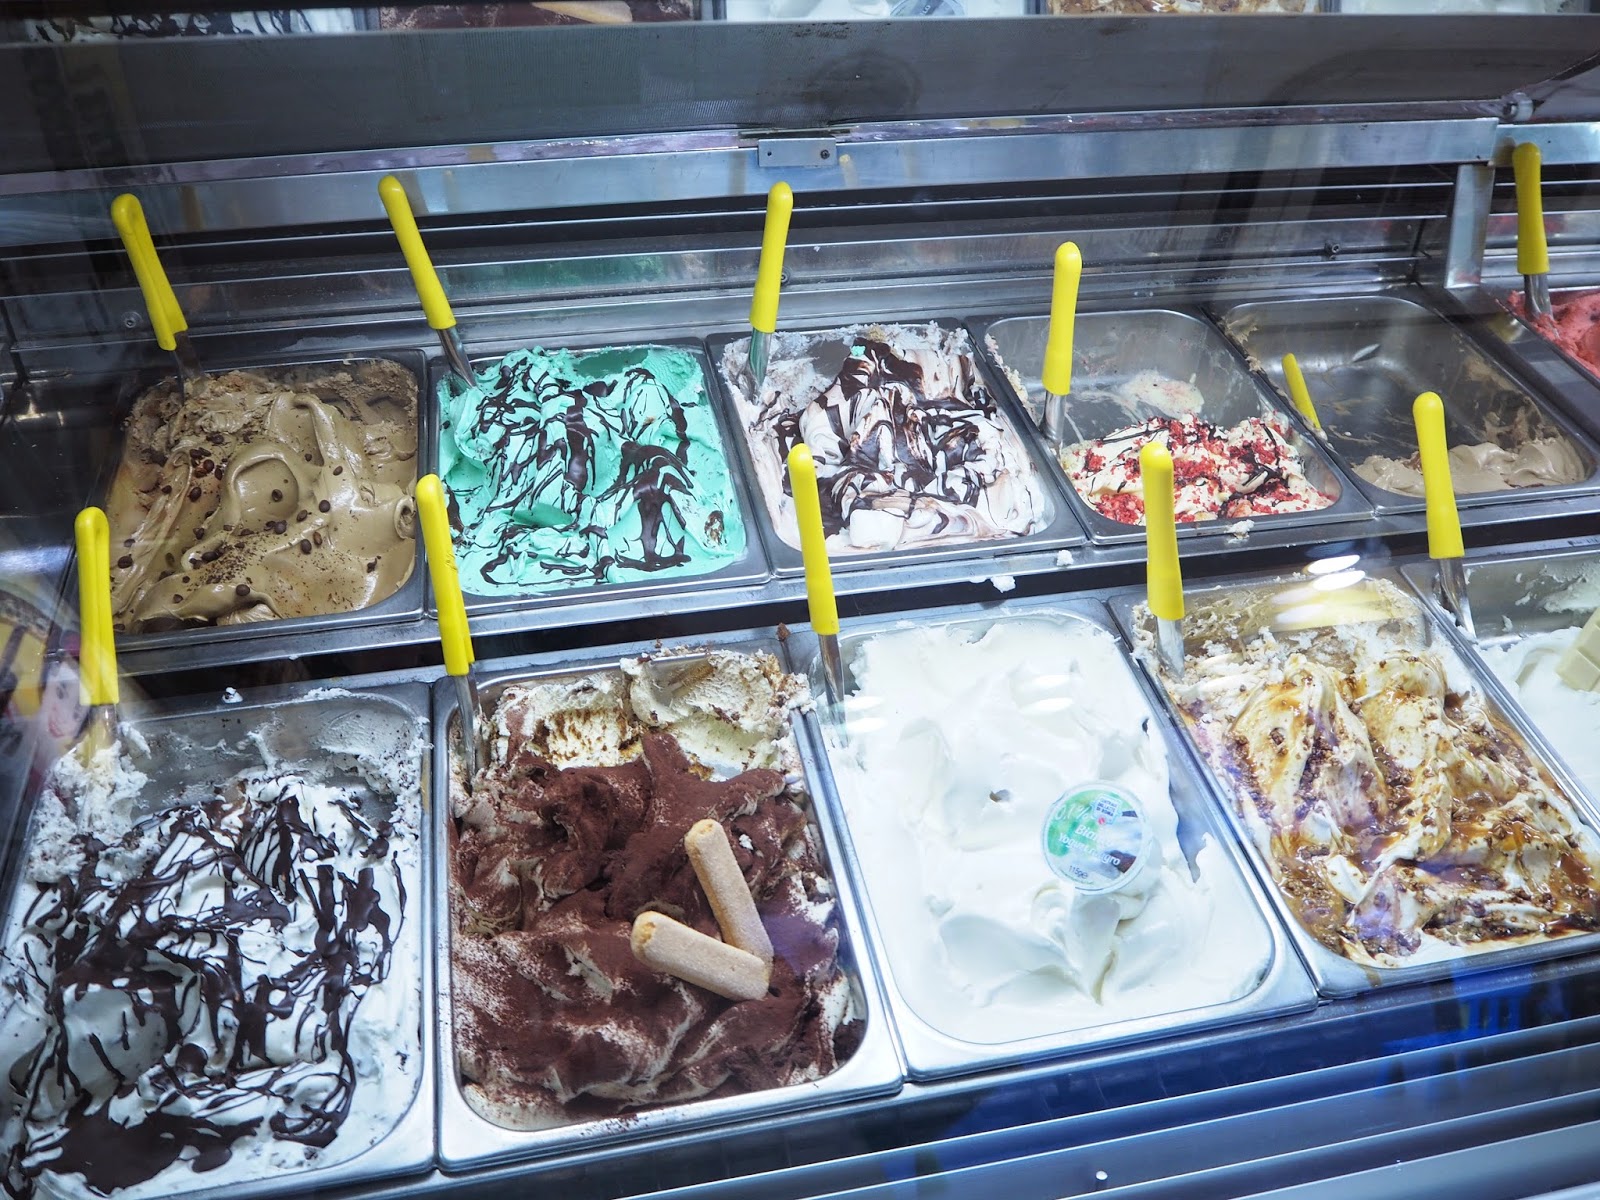 ice cream shop, jäätelöbaari, jäätelökioski, rooma, rome, roma, italia, italy, trastevere, gelato, ice cream, jäätelö. 